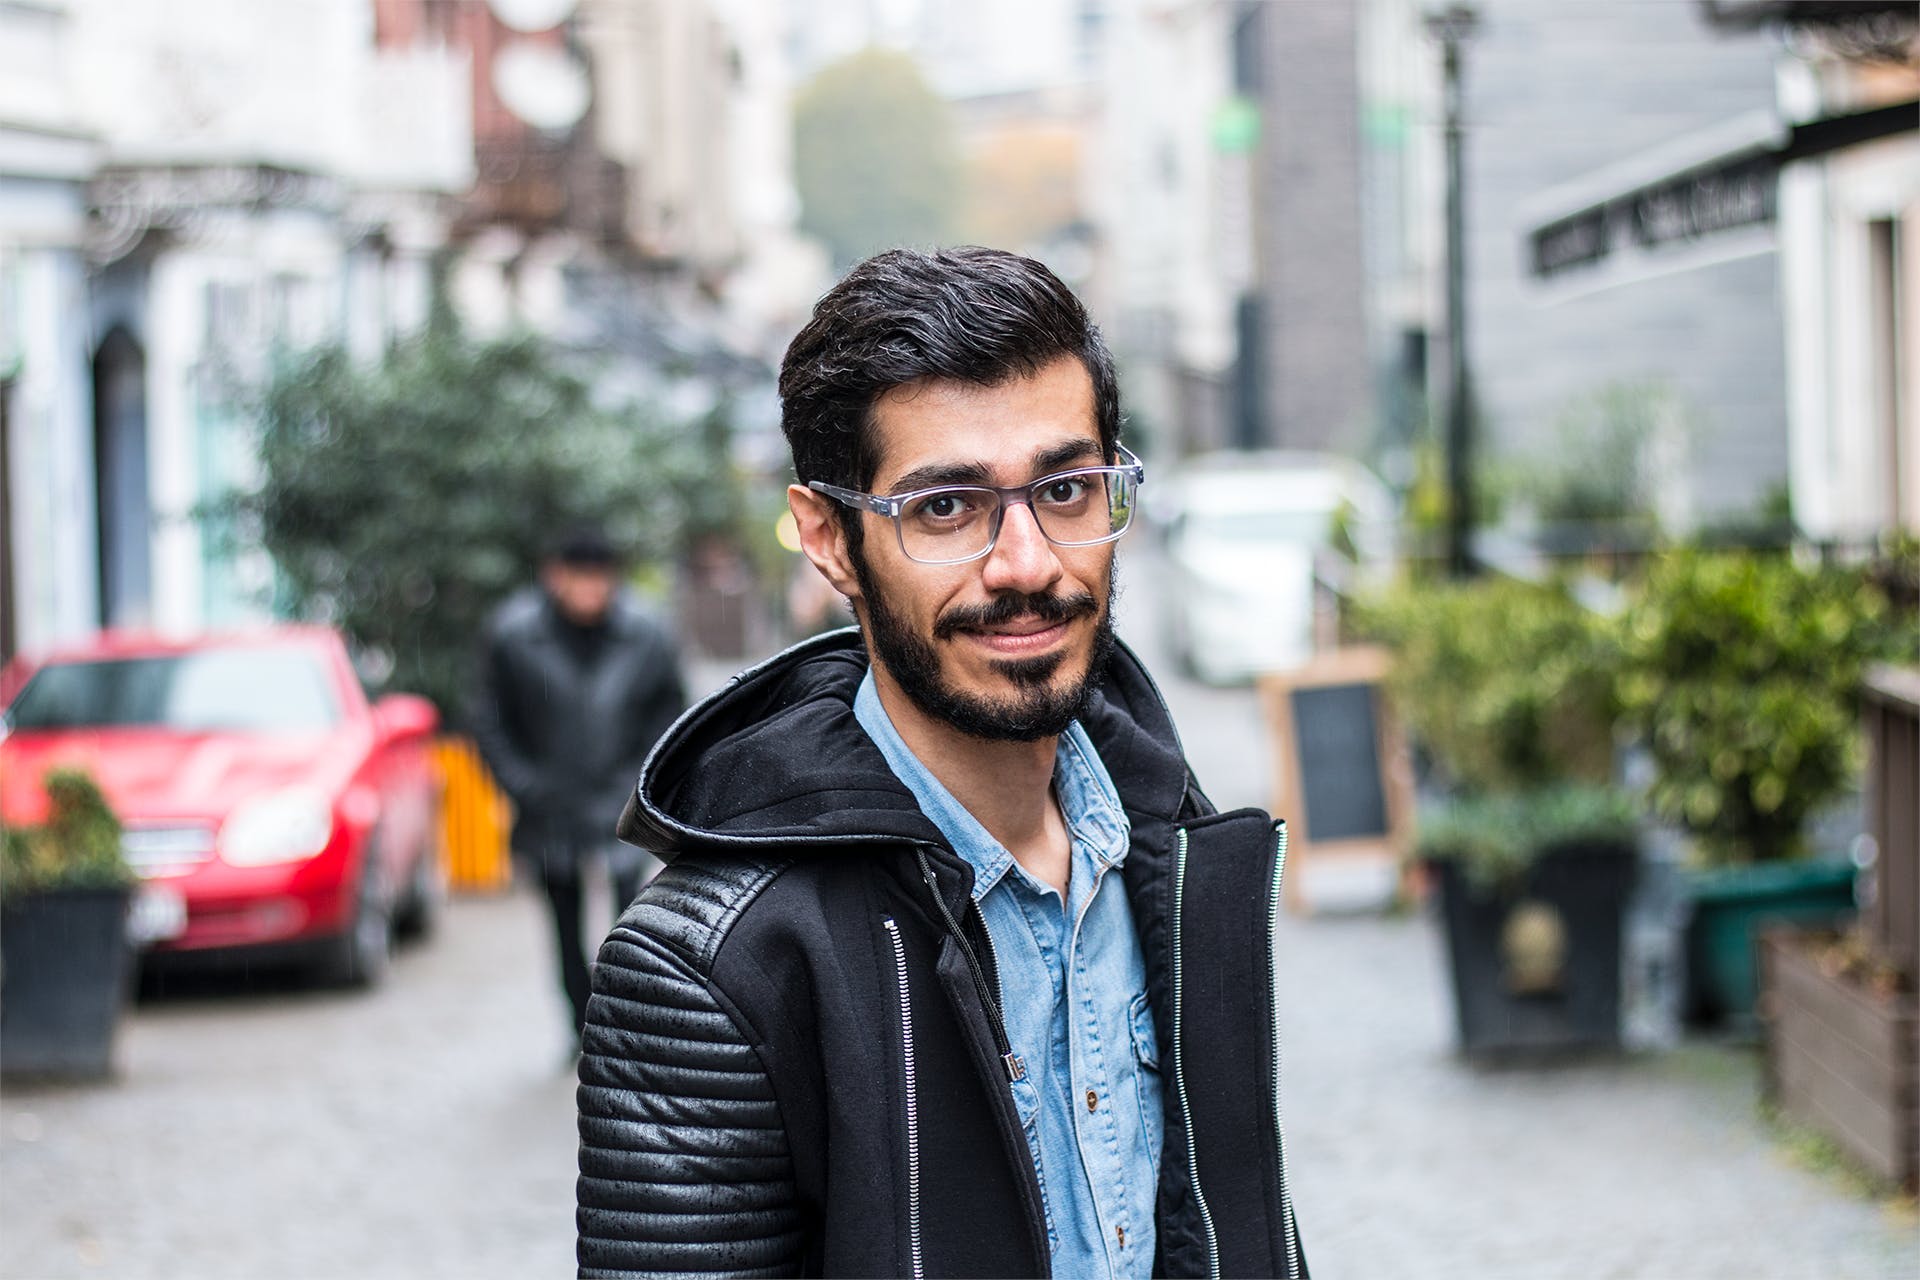 Ein Mann, der eine Brille trägt, während er auf einer Straße geht | Quelle: Pexels